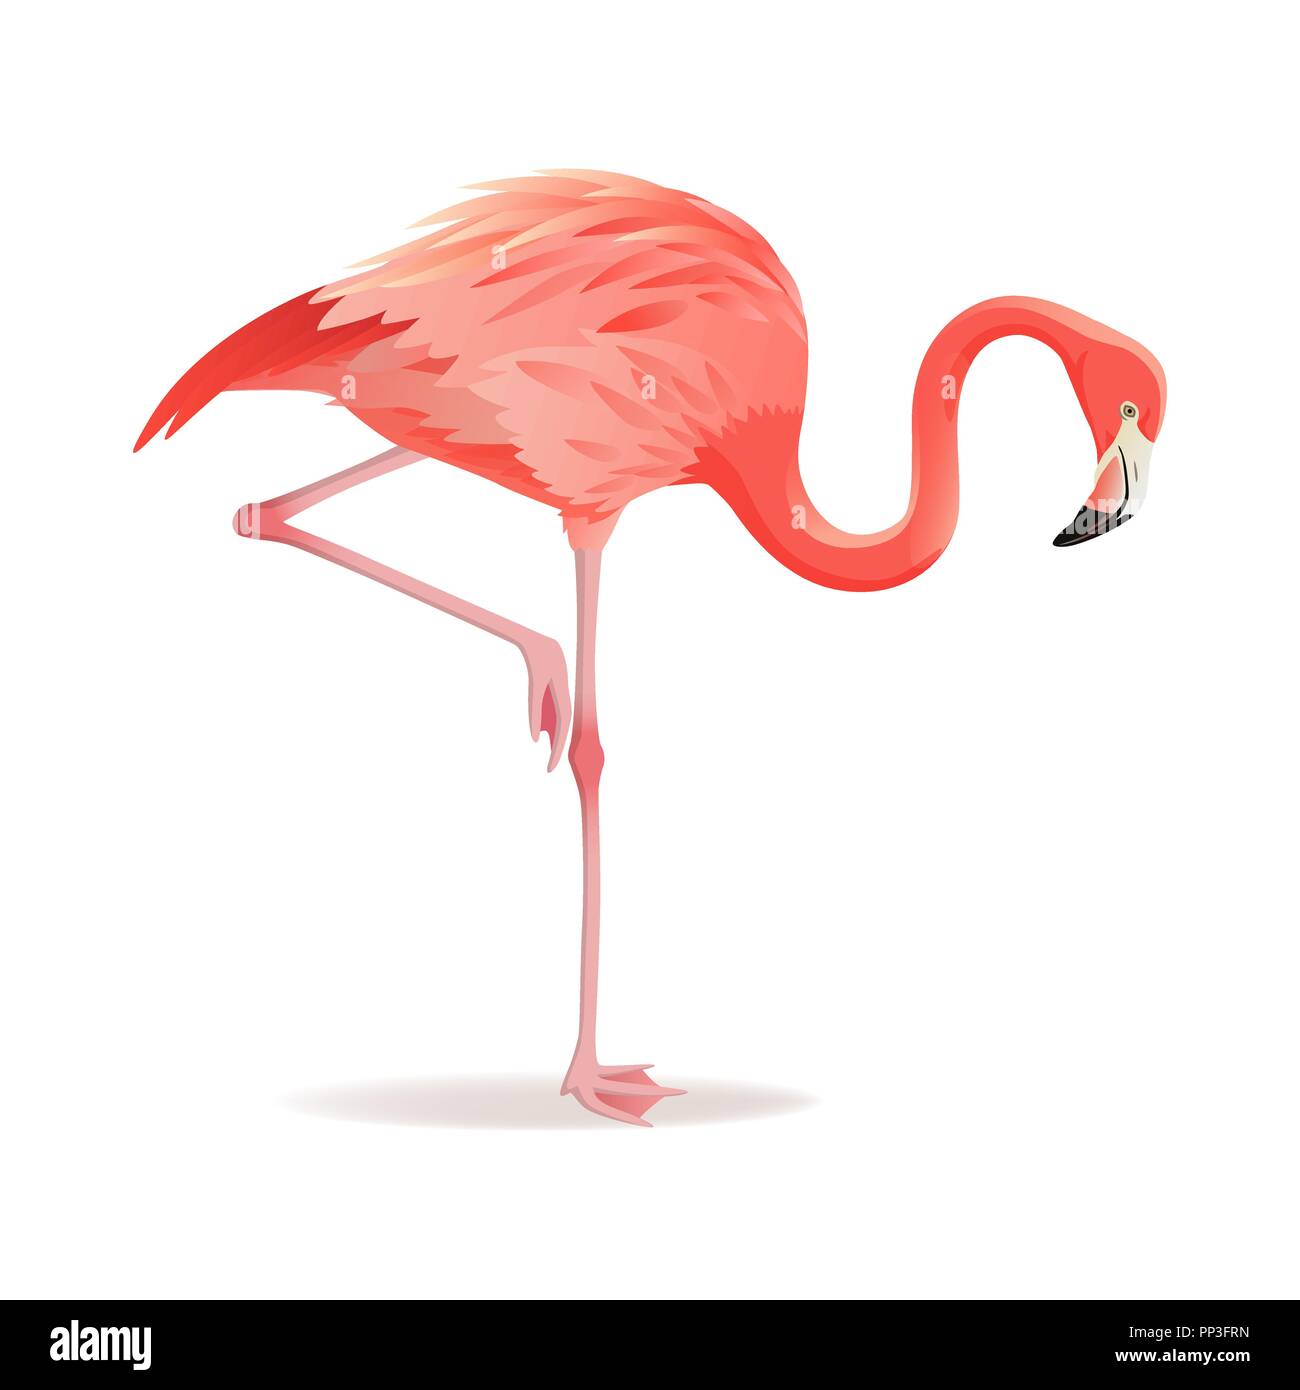 Rosso e rosa fenicottero illustrazione vettoriale. Raffreddare gli uccelli esotici in piedi, design decorativo raccolta di elementi. Flamingo isolati su sfondo bianco Illustrazione Vettoriale